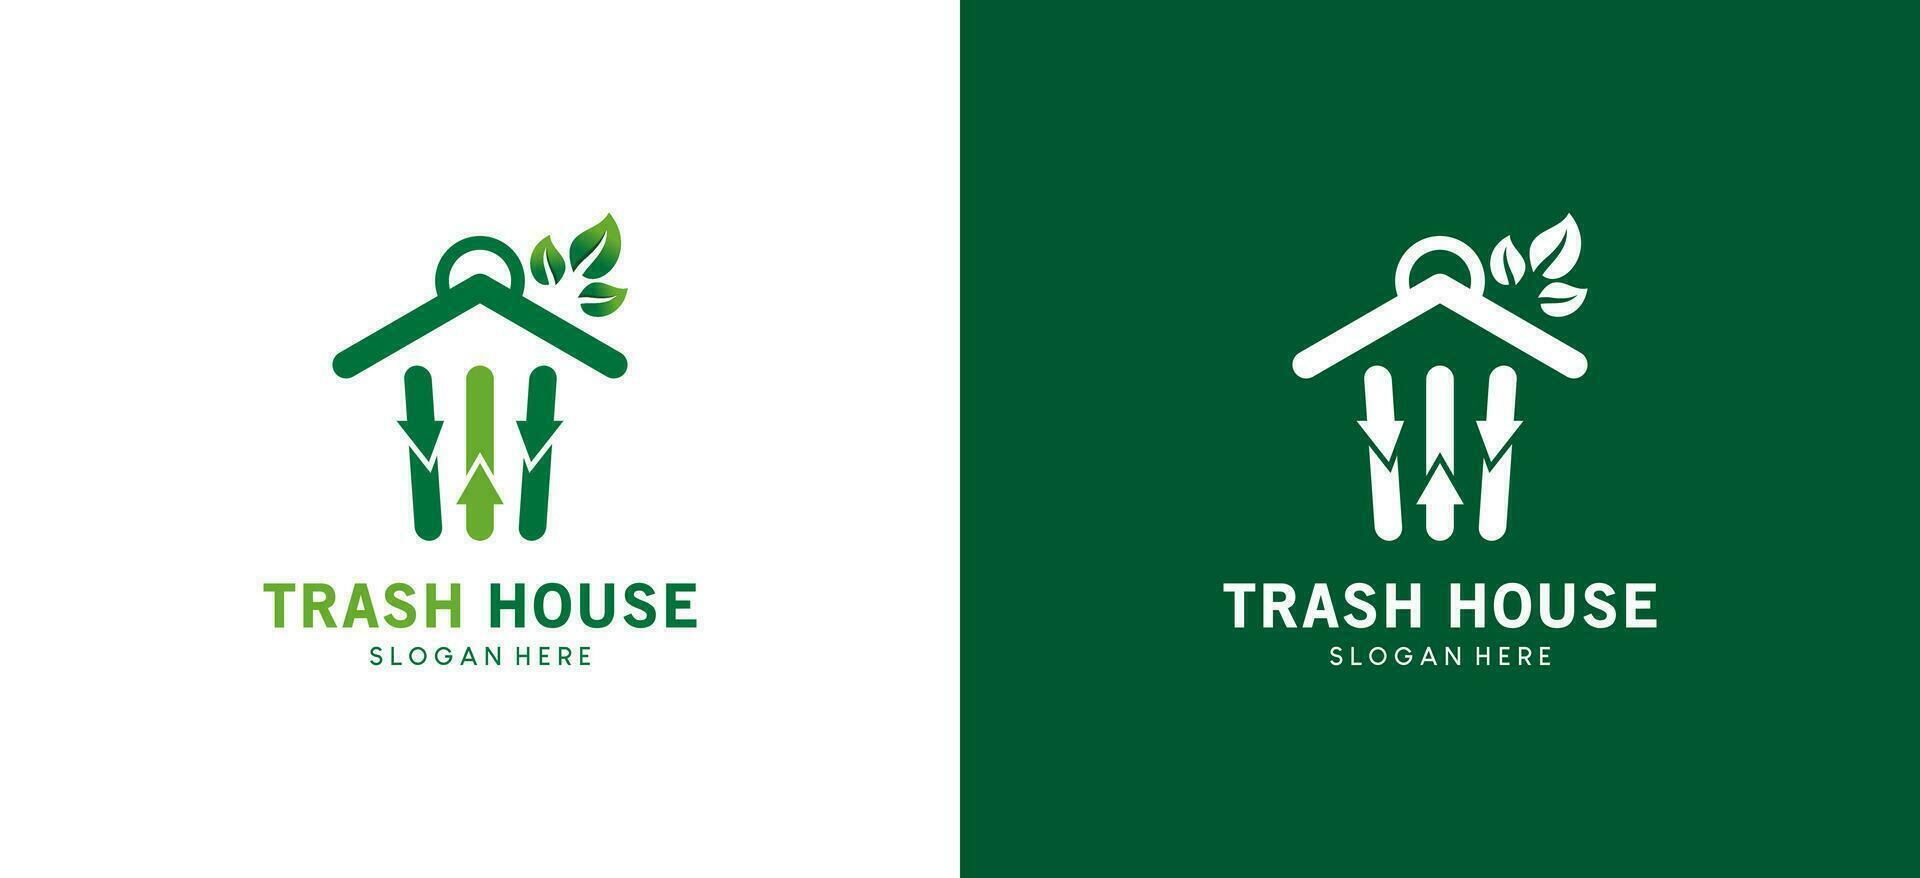 moderne des ordures maison logo conception adapté pour déchets banque et environnement se soucier vecteur